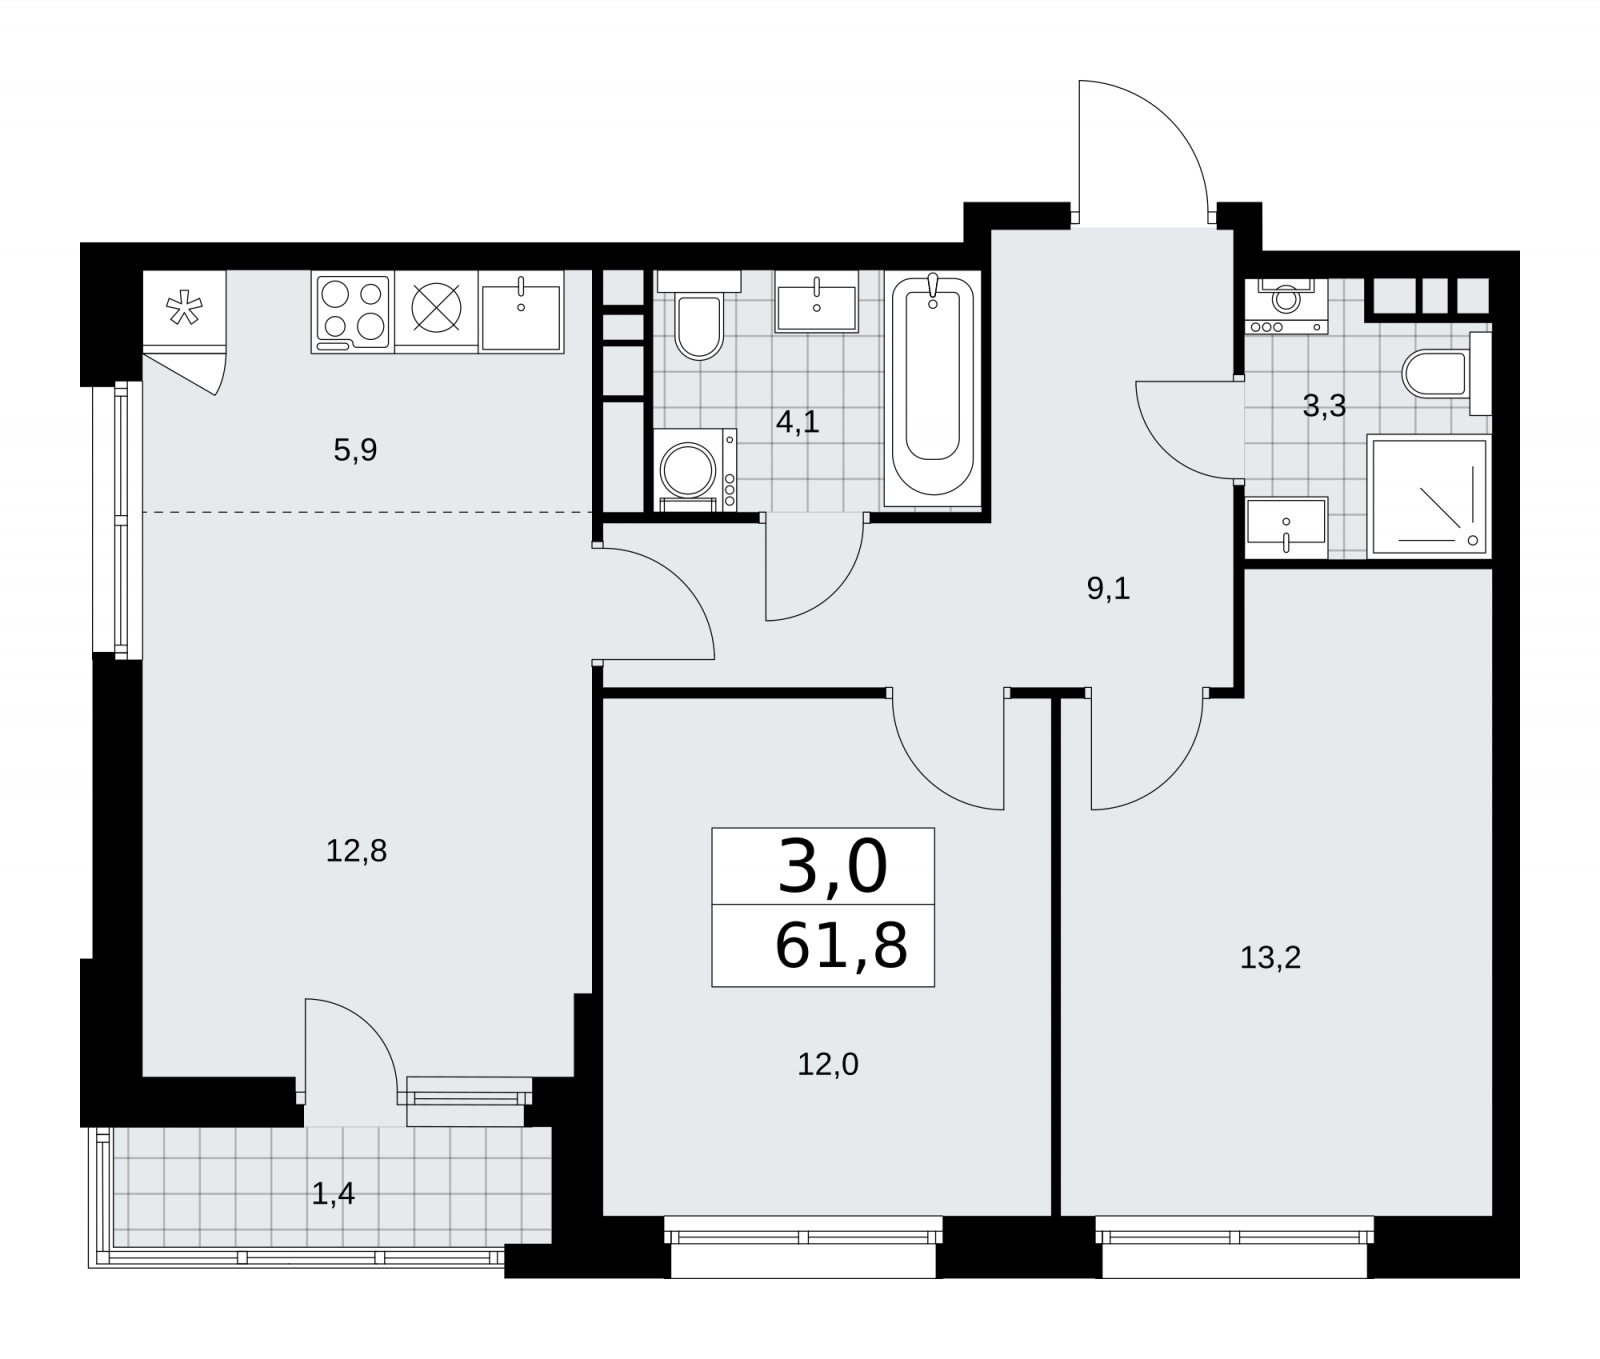 Продается трехкомнатная квартира с европланировкой в новом жилом комплексе, у метро